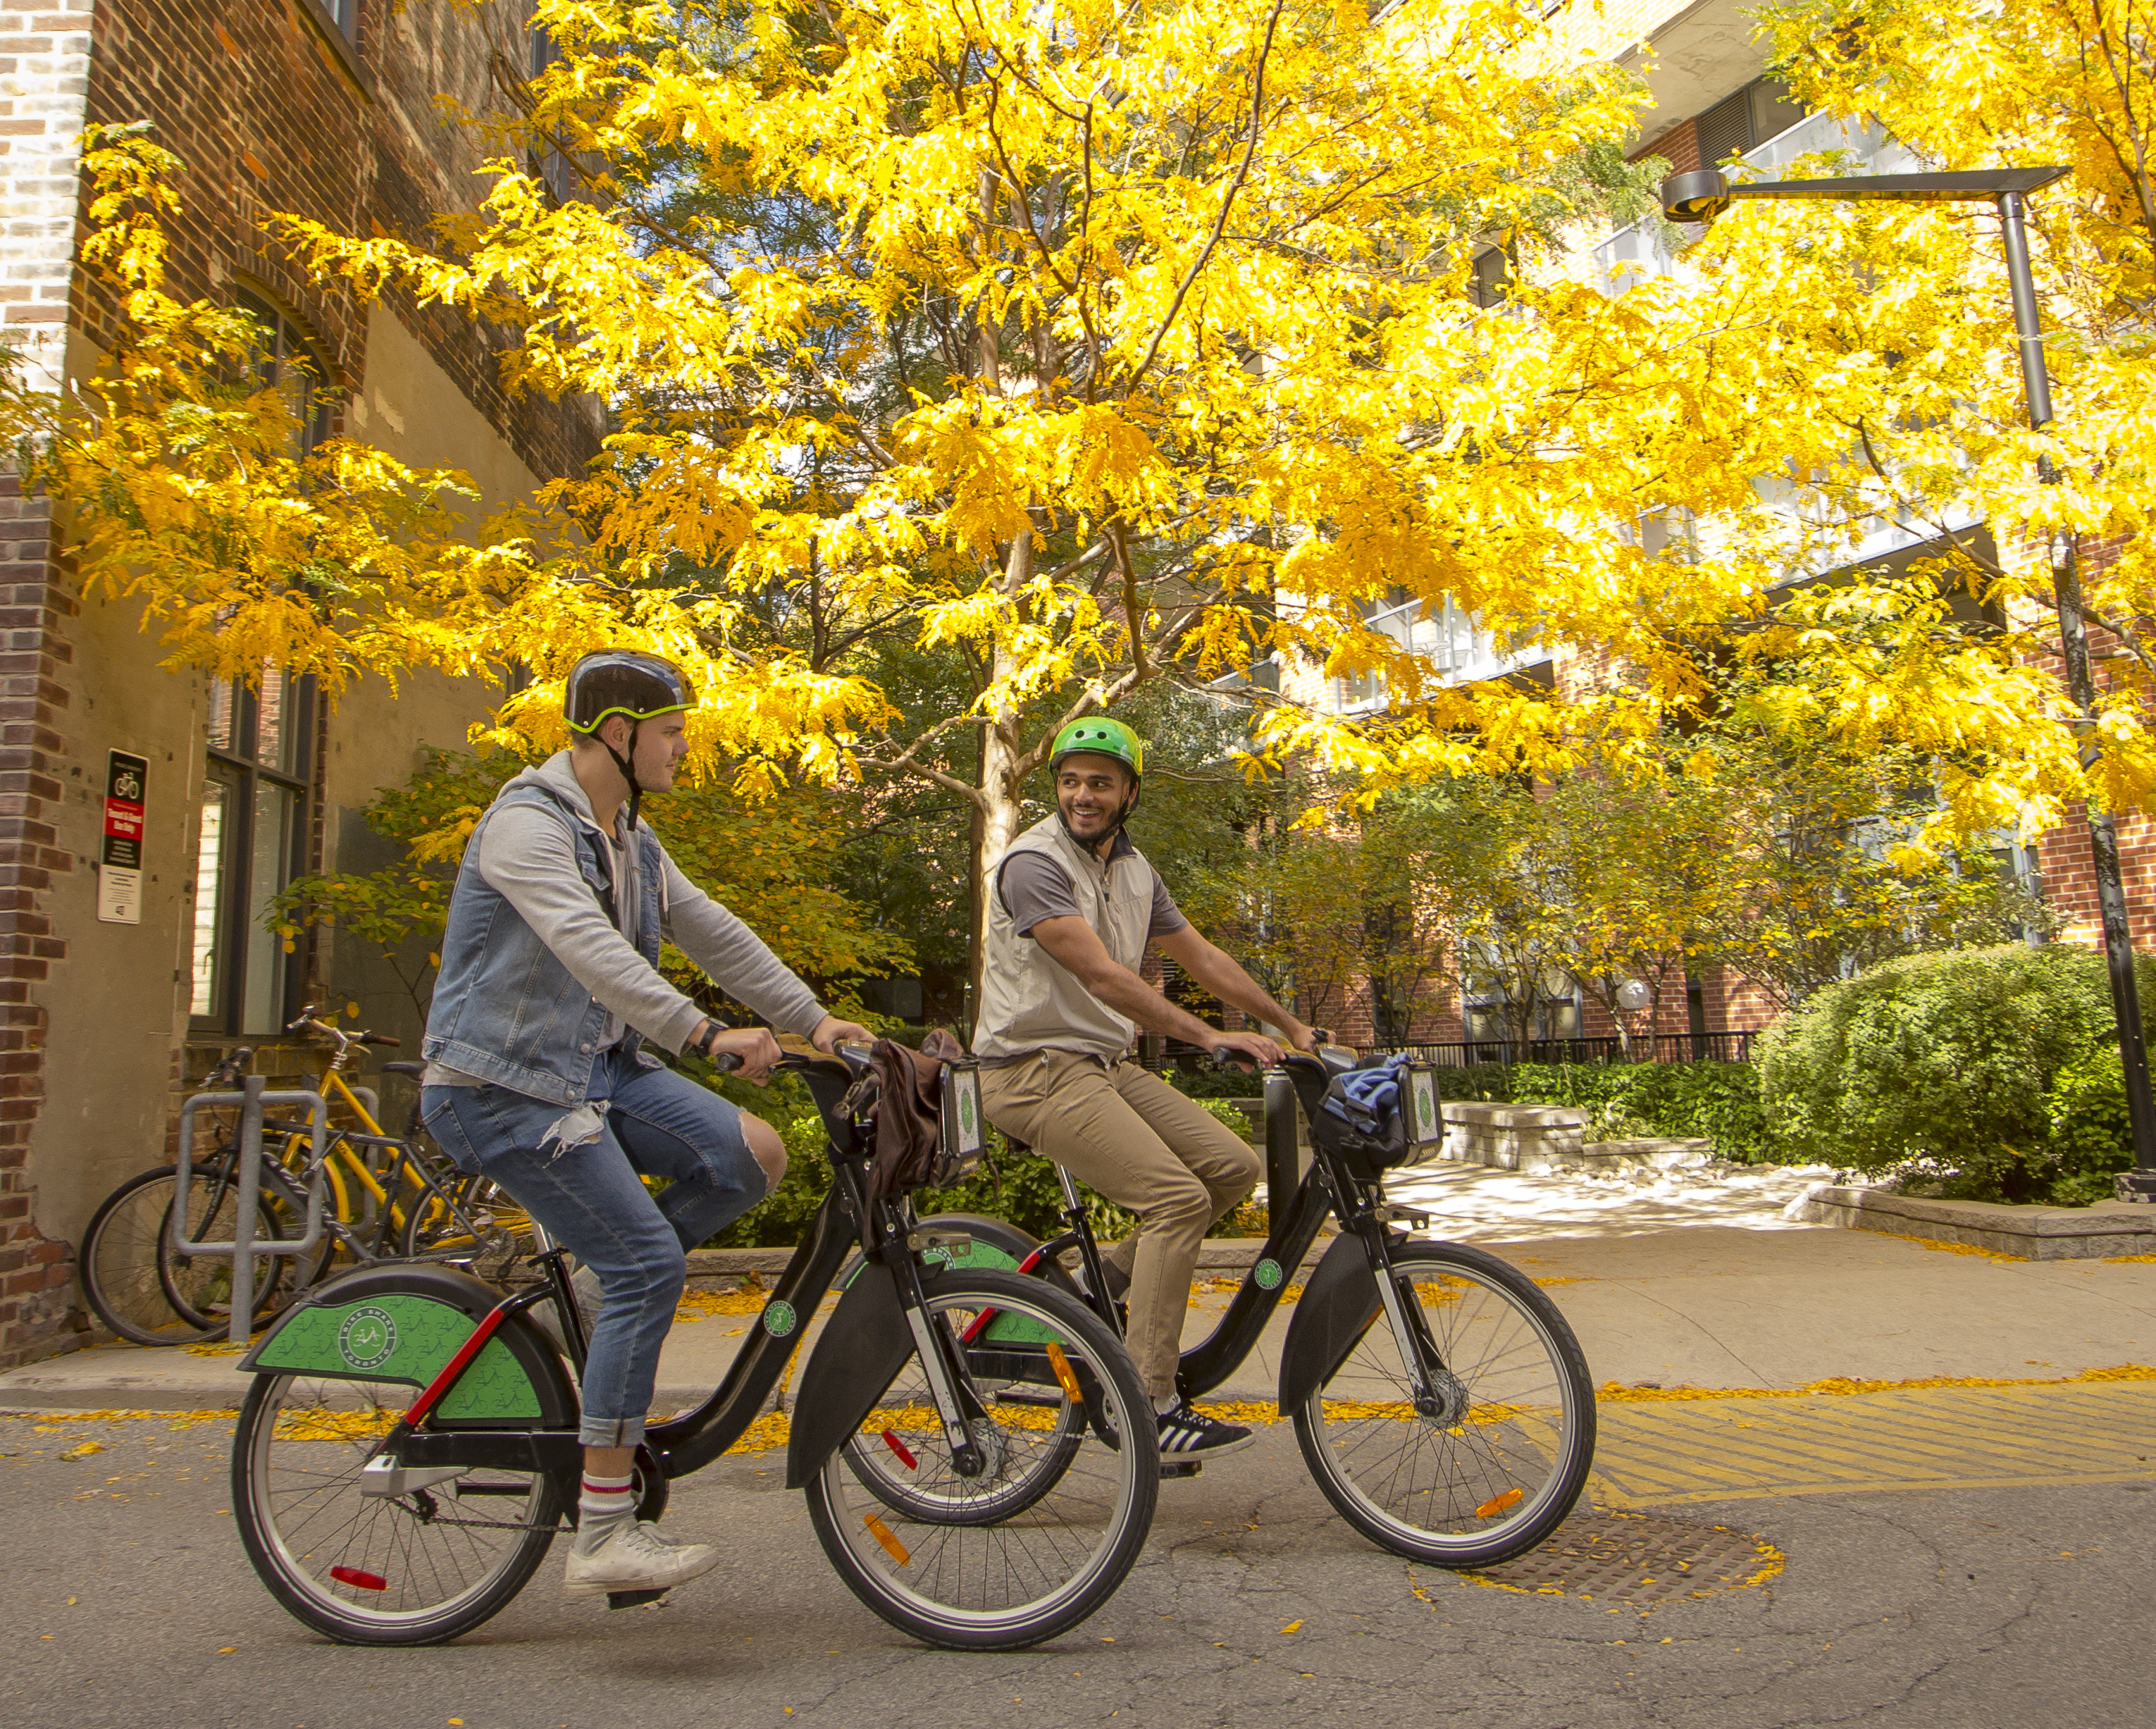 Bike Share Toronto Annual Members Passes